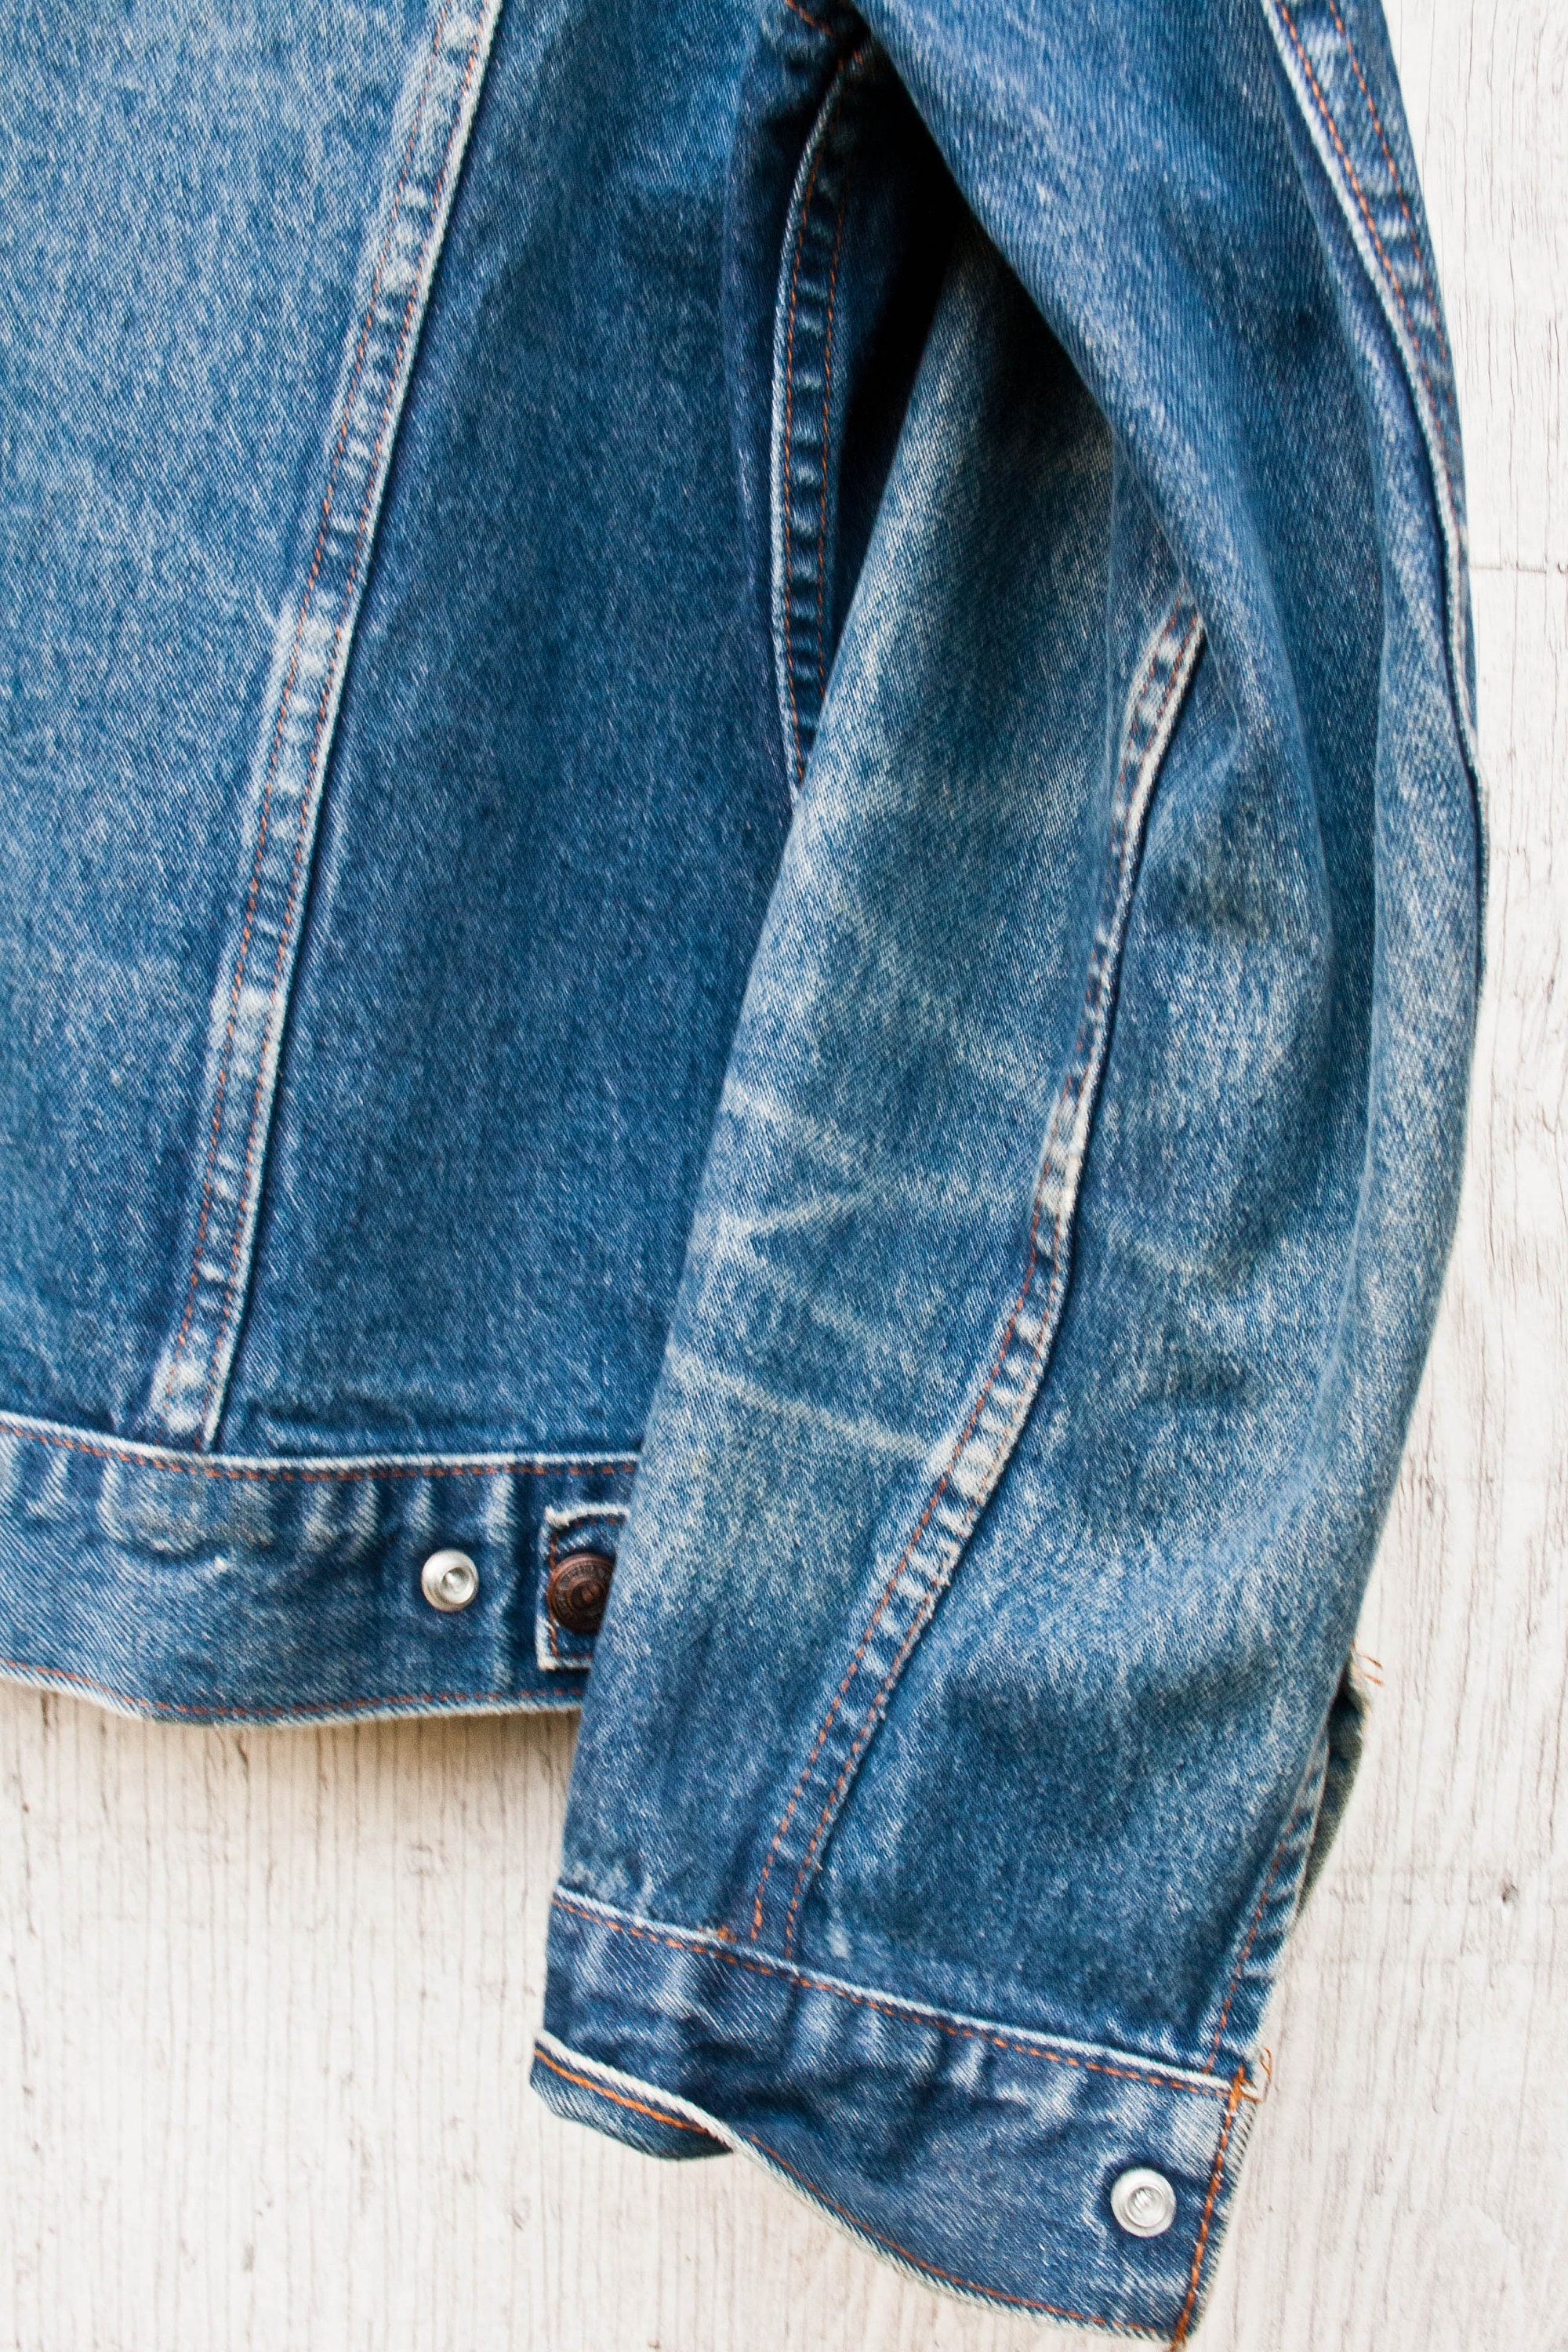 Worn in GWG Denim Jacket Vintage Blue Jean Jacket Vtg | Etsy Canada